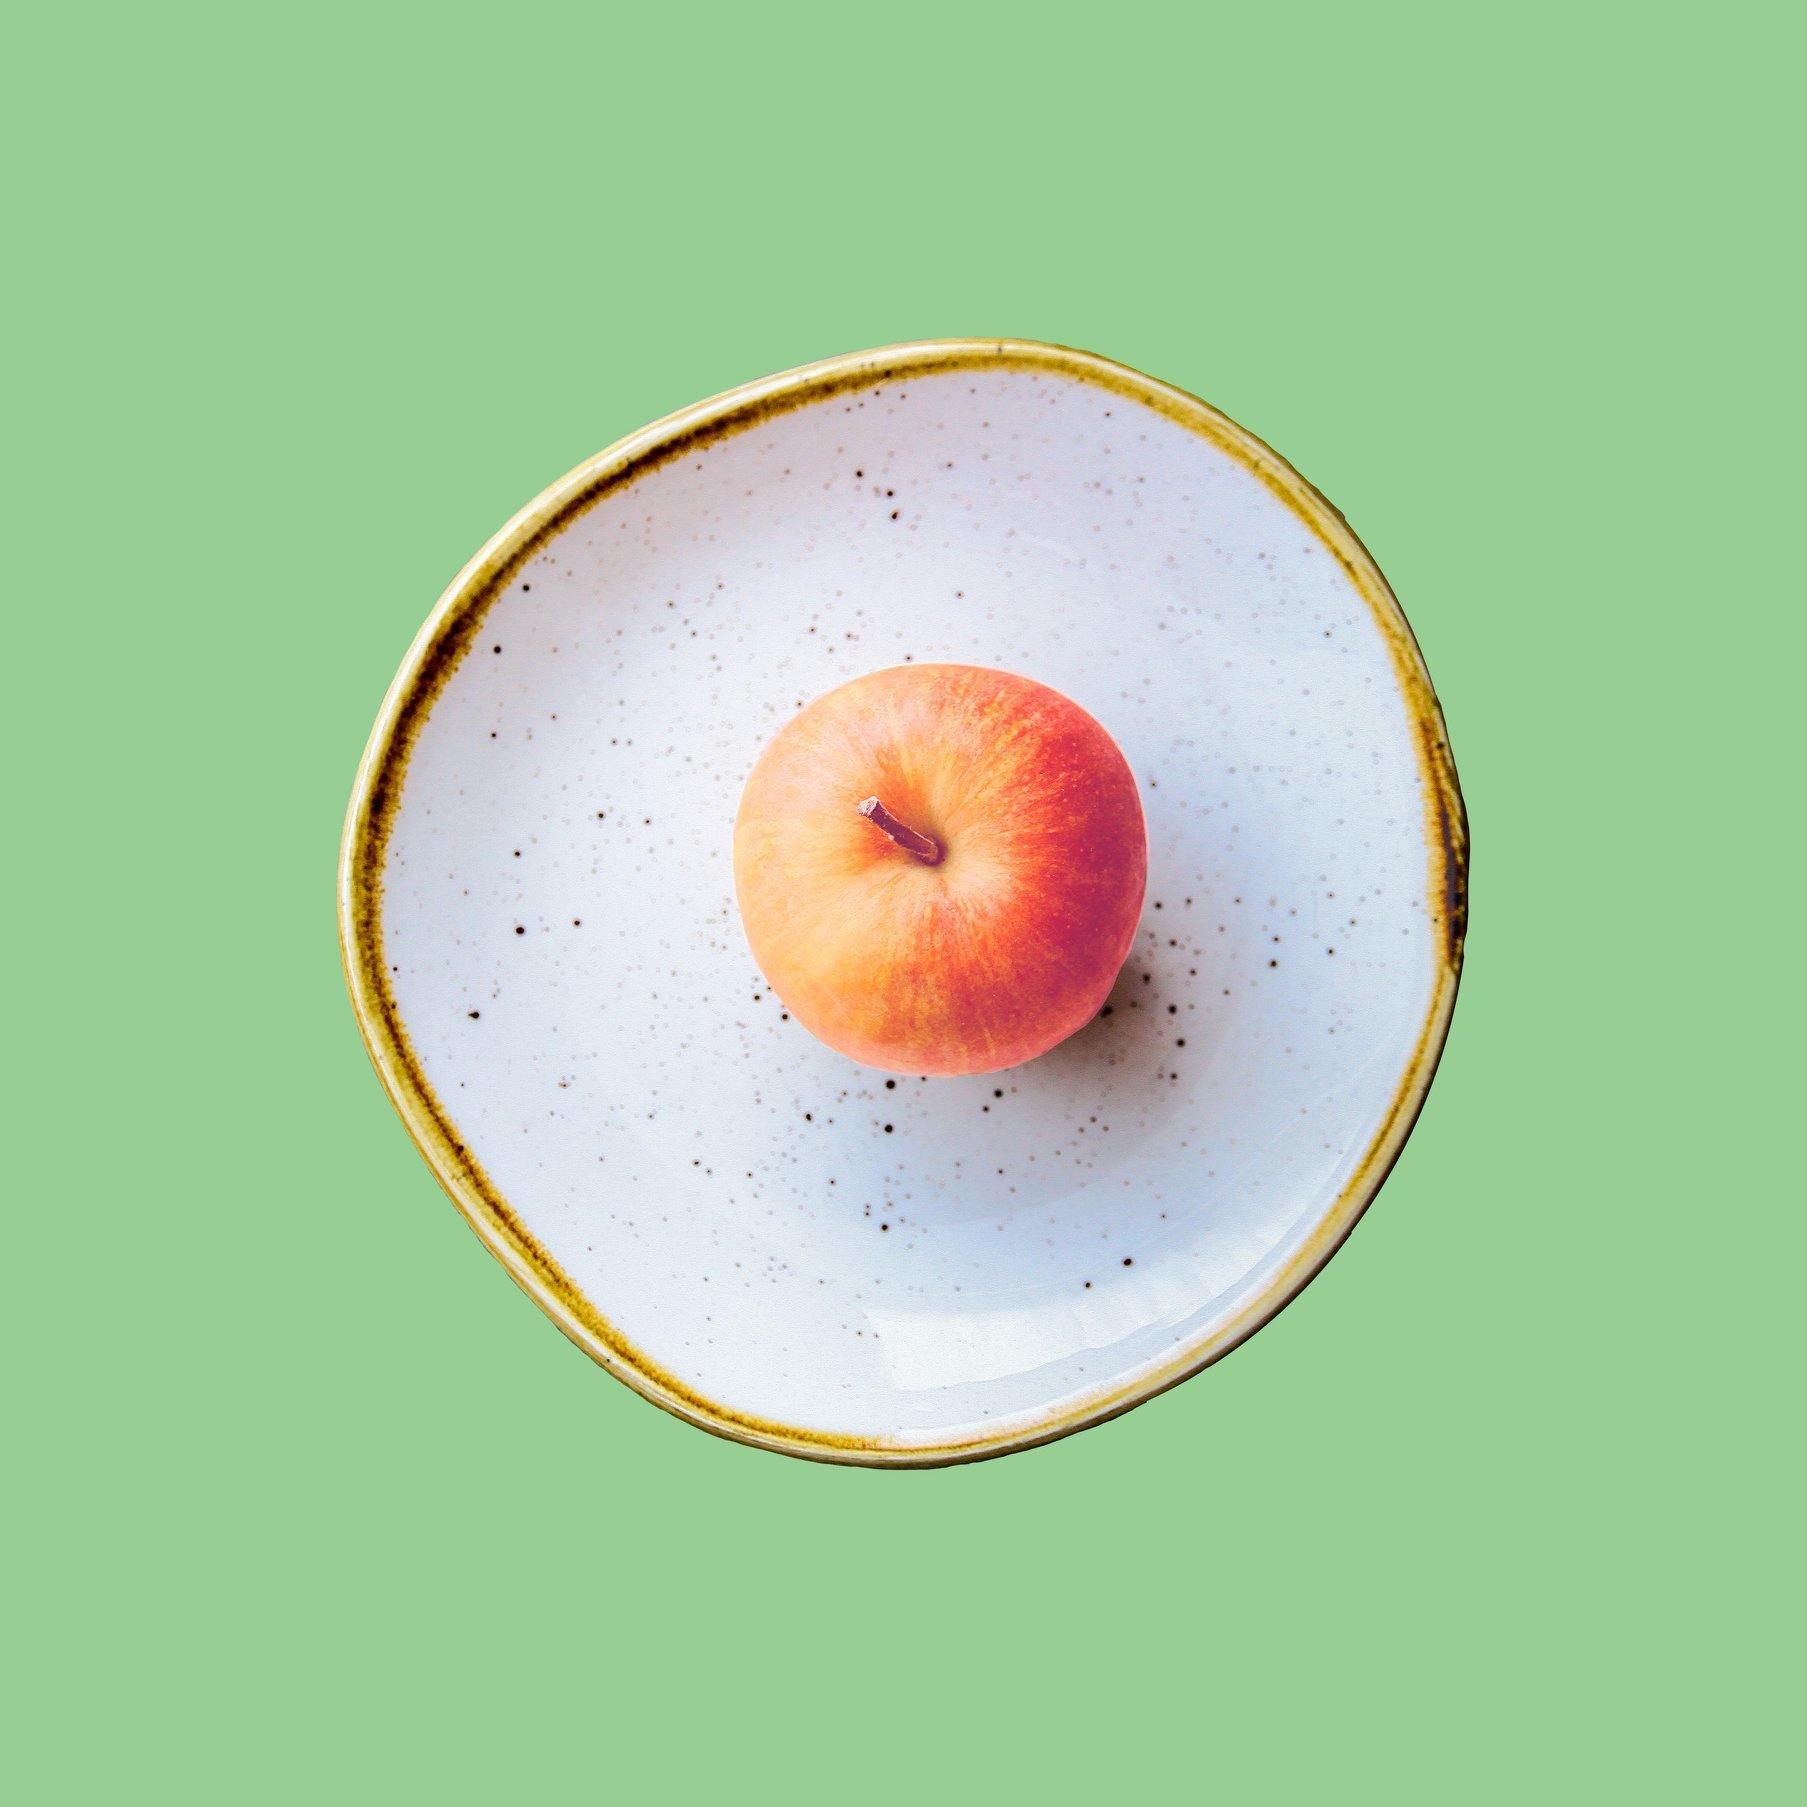 תפוחחה - משקה אורגני מוגז תפוח אננס - גרופר - פריקפוא